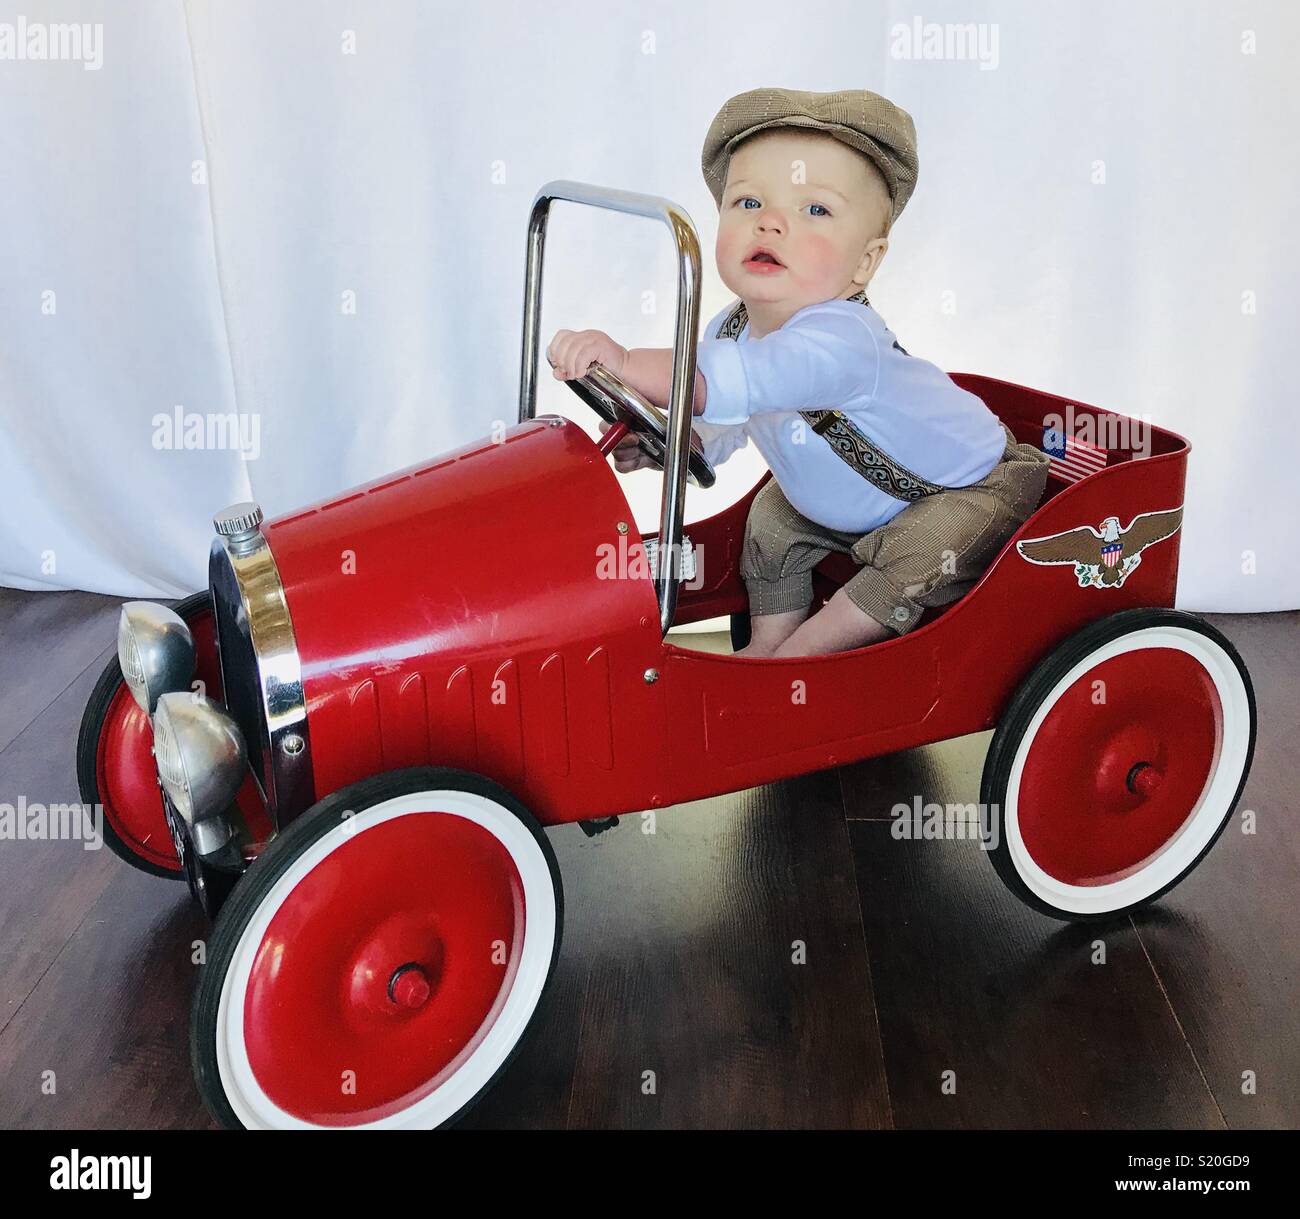 Cute Baby in einem Aktuelles boy Outfit spielen mit seinen antiken Auto  feilbieten. Diese niedlichen Baby trägt Braun tan Schlüpfer, Hosenträger  und ein aktuelles Boy hat, während er in seinem roten Auto